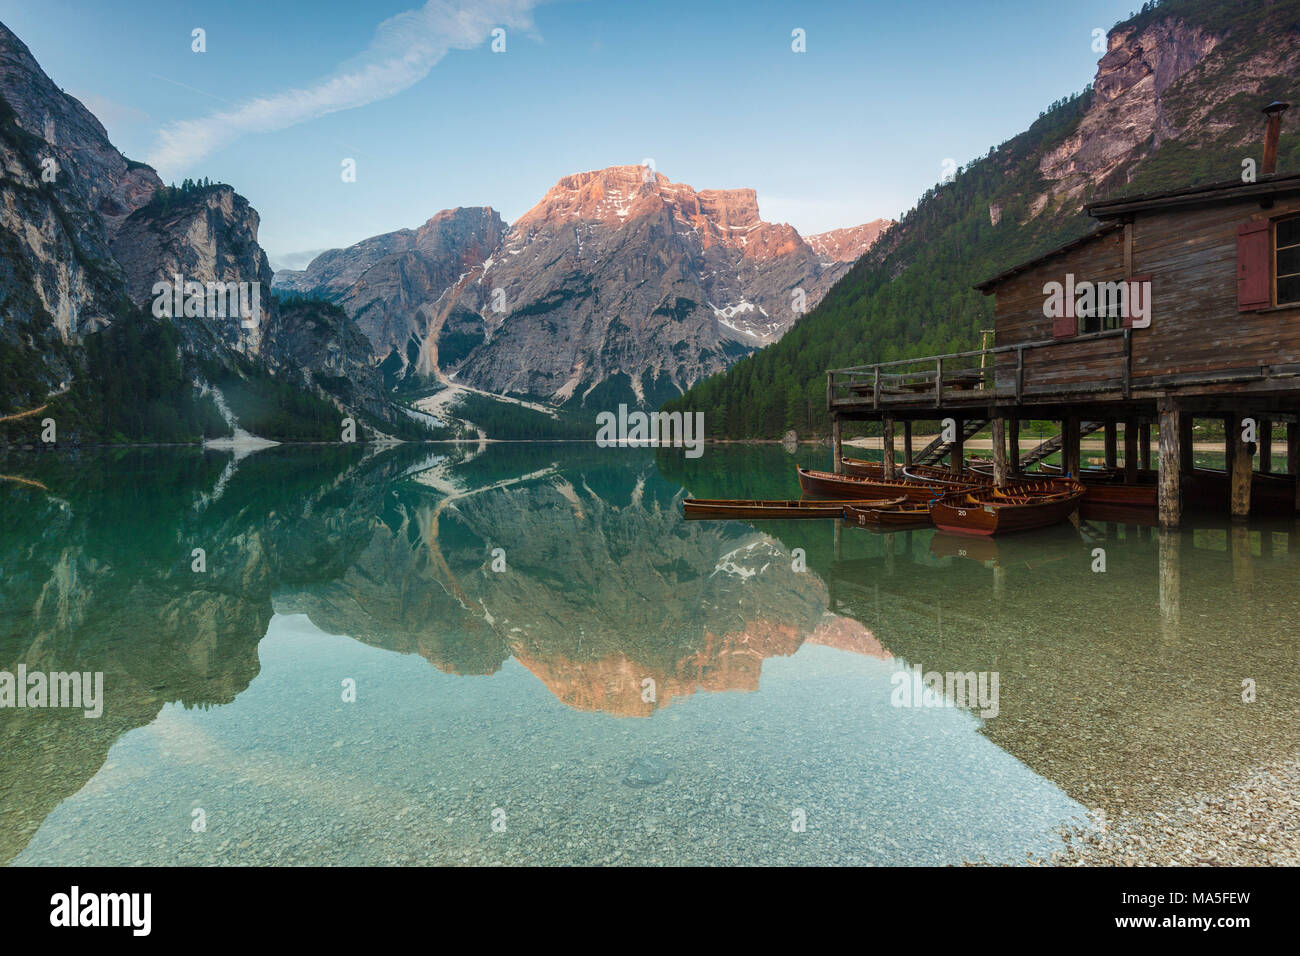 Le lac de Braies (Pragser Wildsee) avec Croda del Becco en arrière-plan, Dolomites, province de Bolzano, le Tyrol du Sud, Italie Banque D'Images